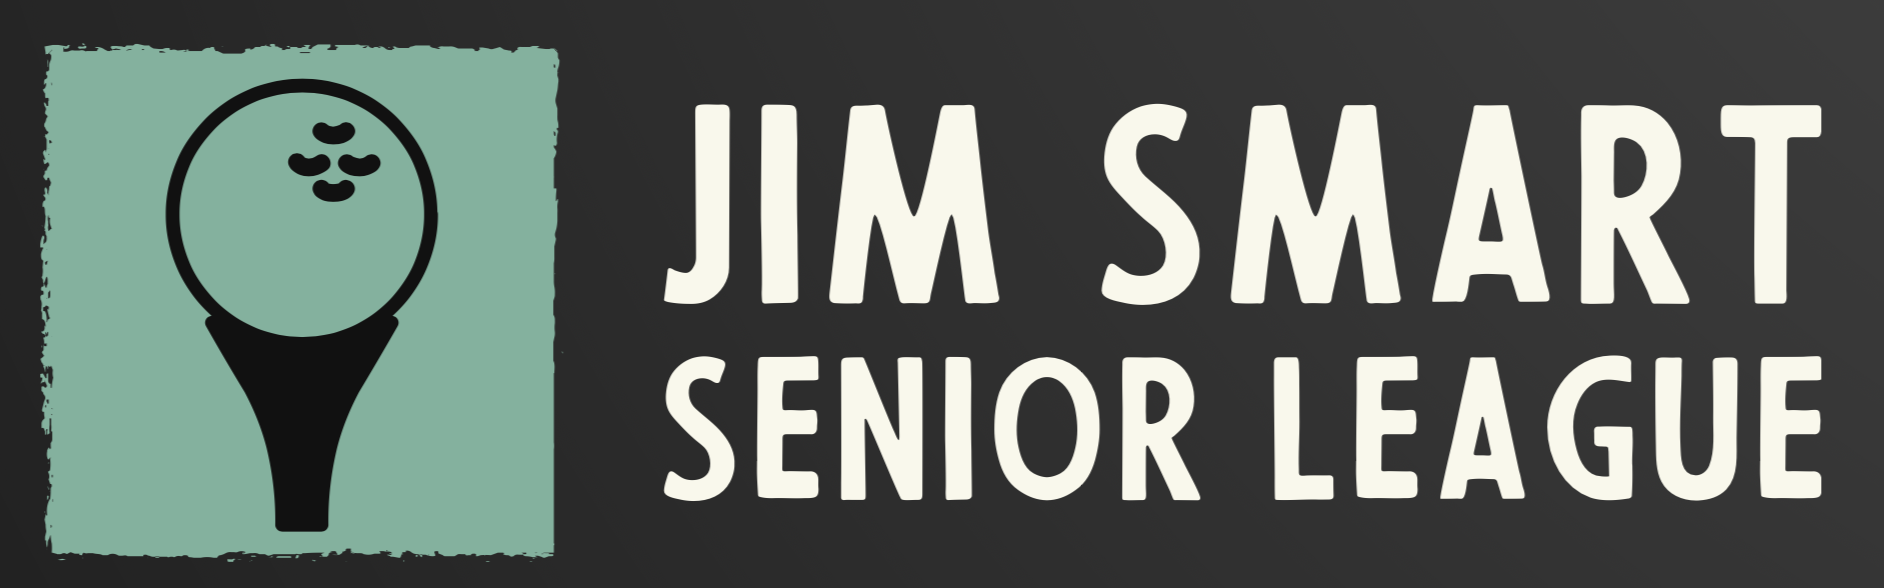 Jim Smart Golf League